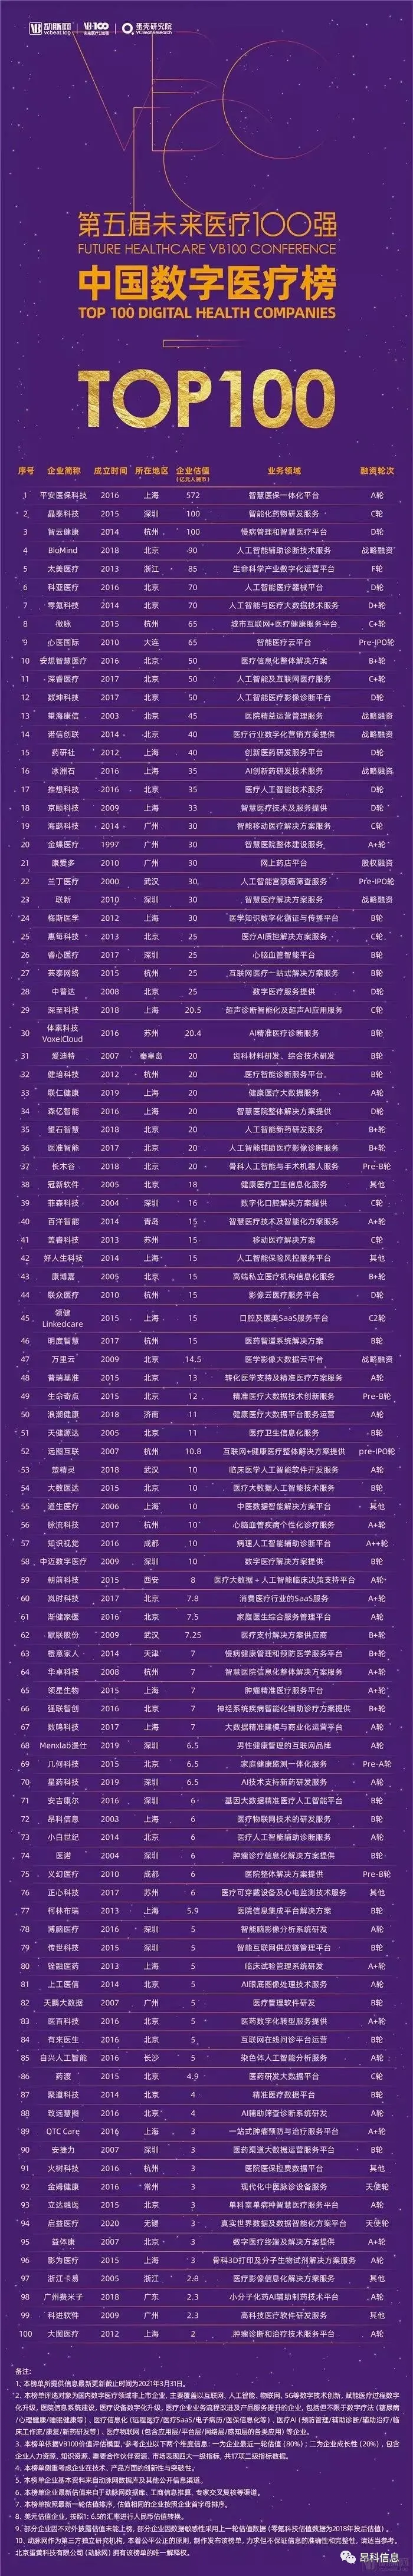 2021未来医疗100强-中国数字医疗榜TOP100企业榜 昂科